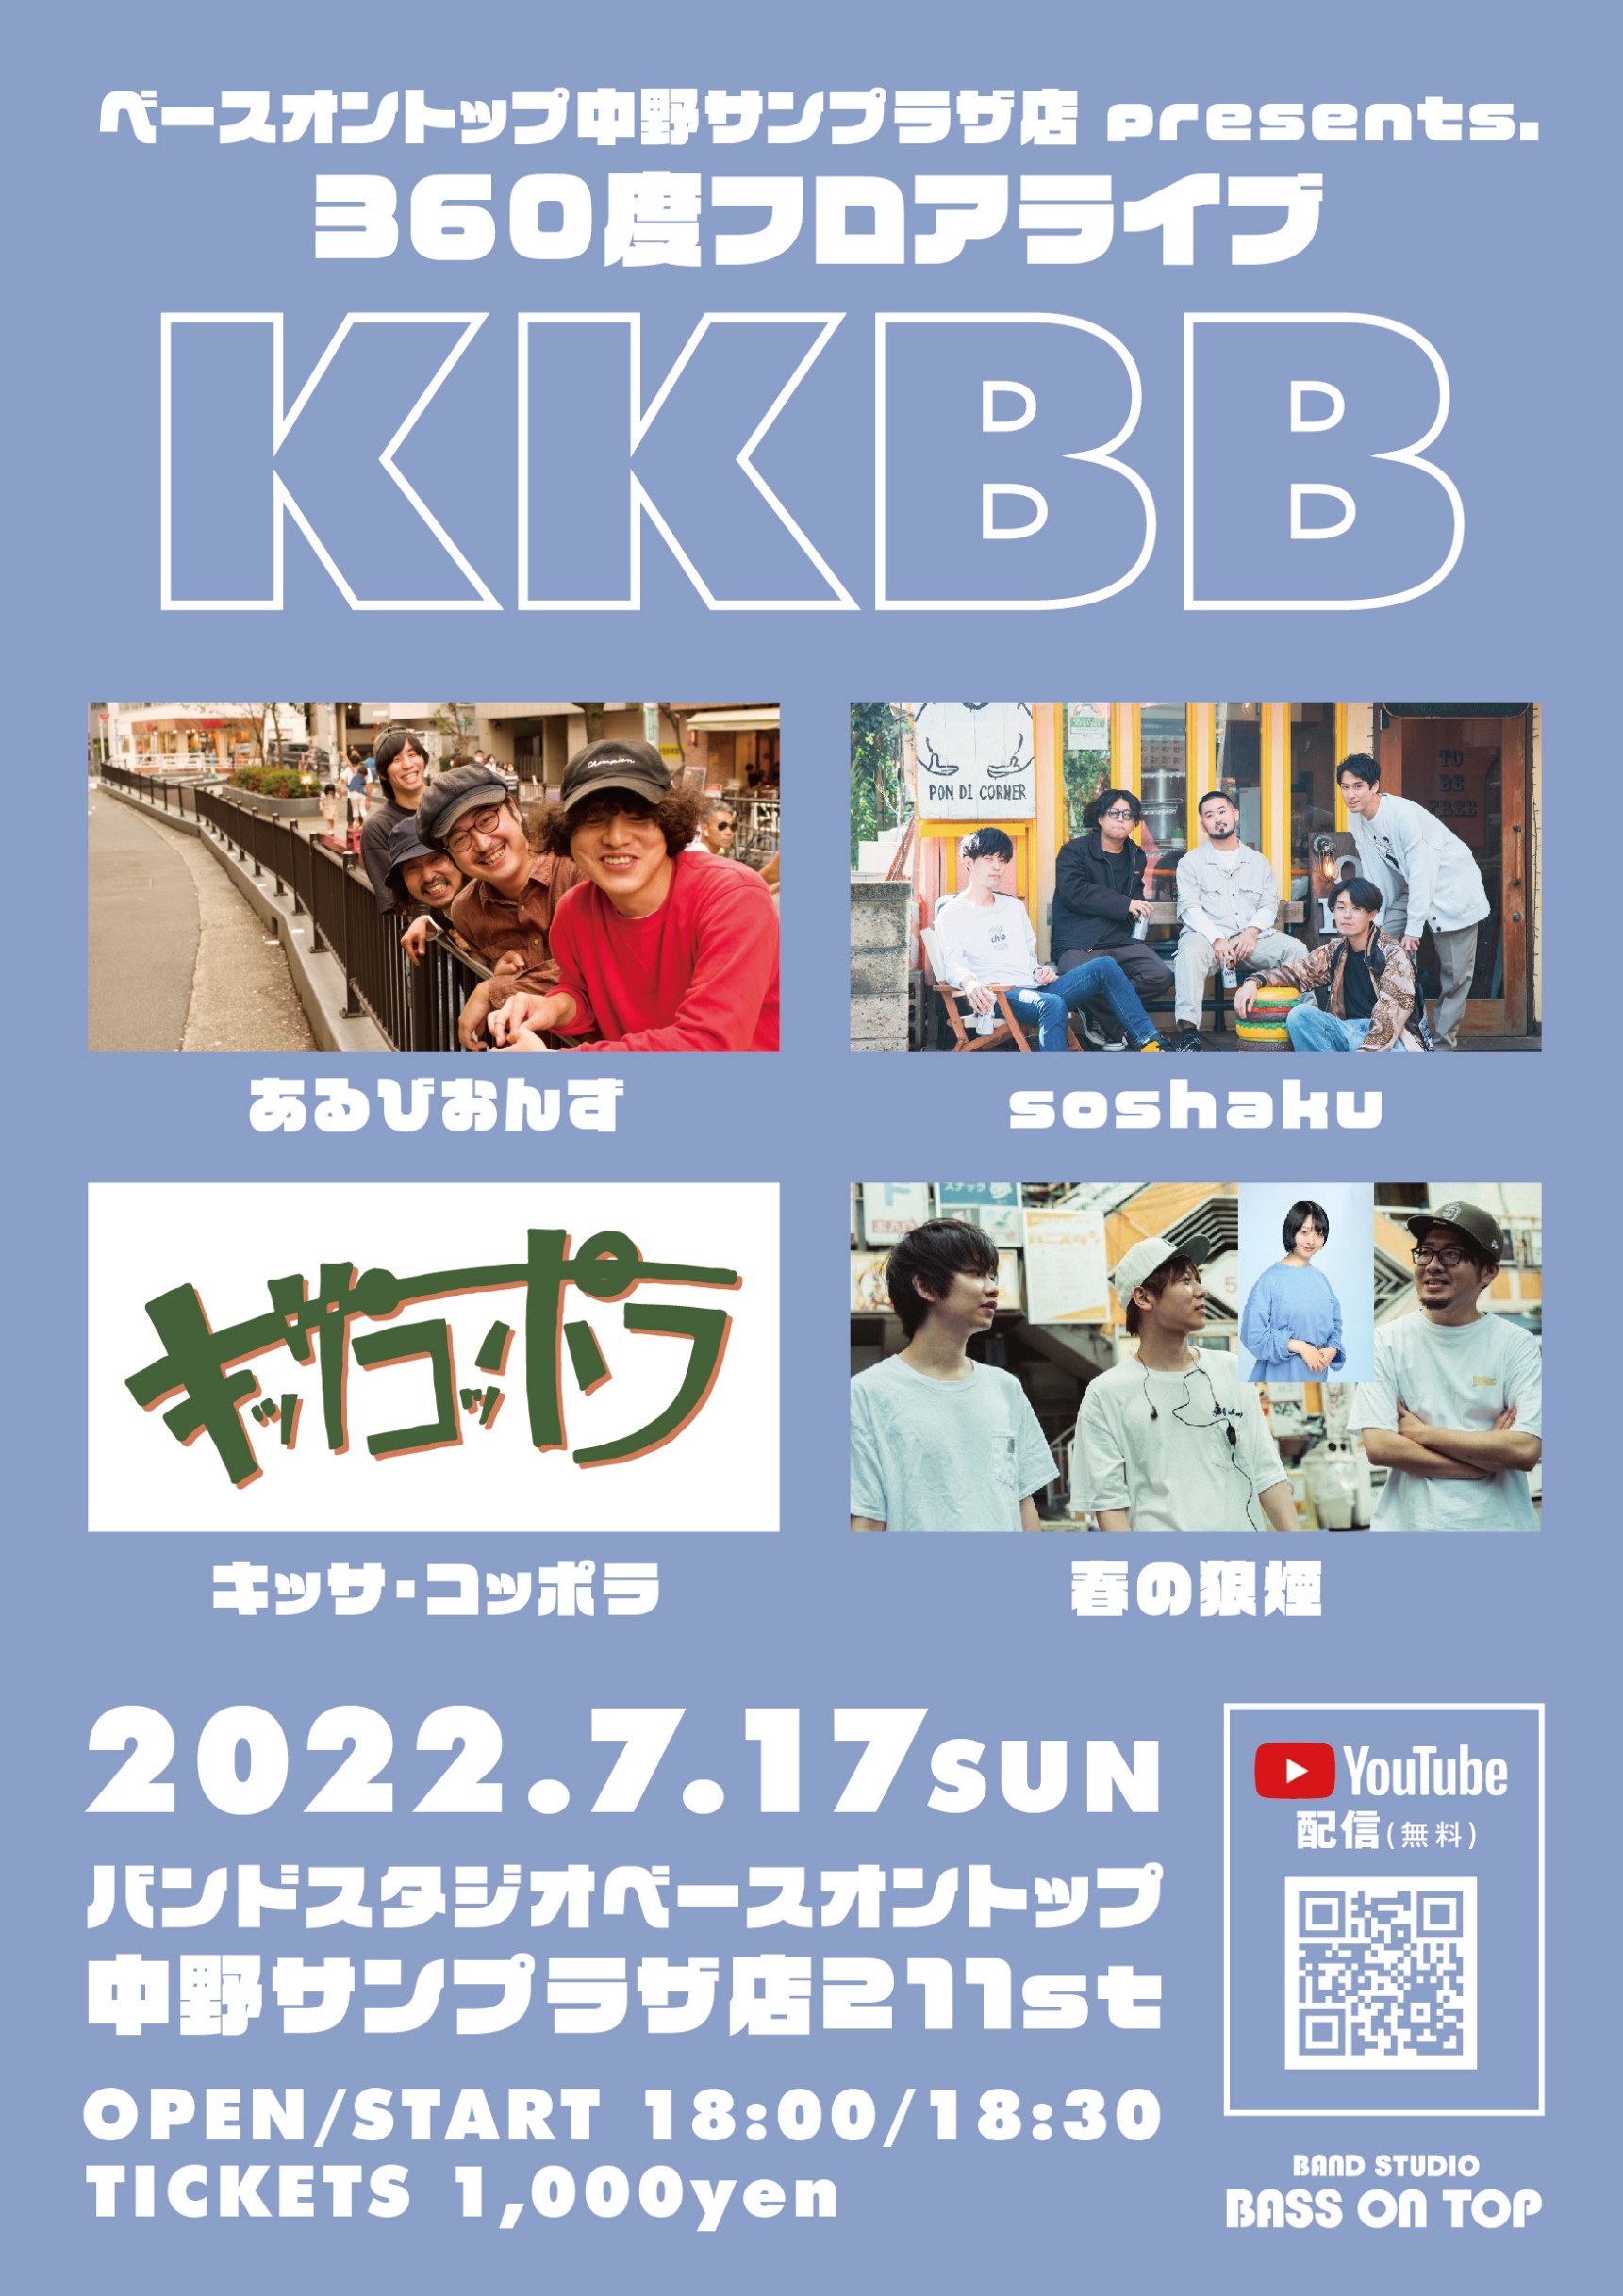 KKBB(配信あり!!)